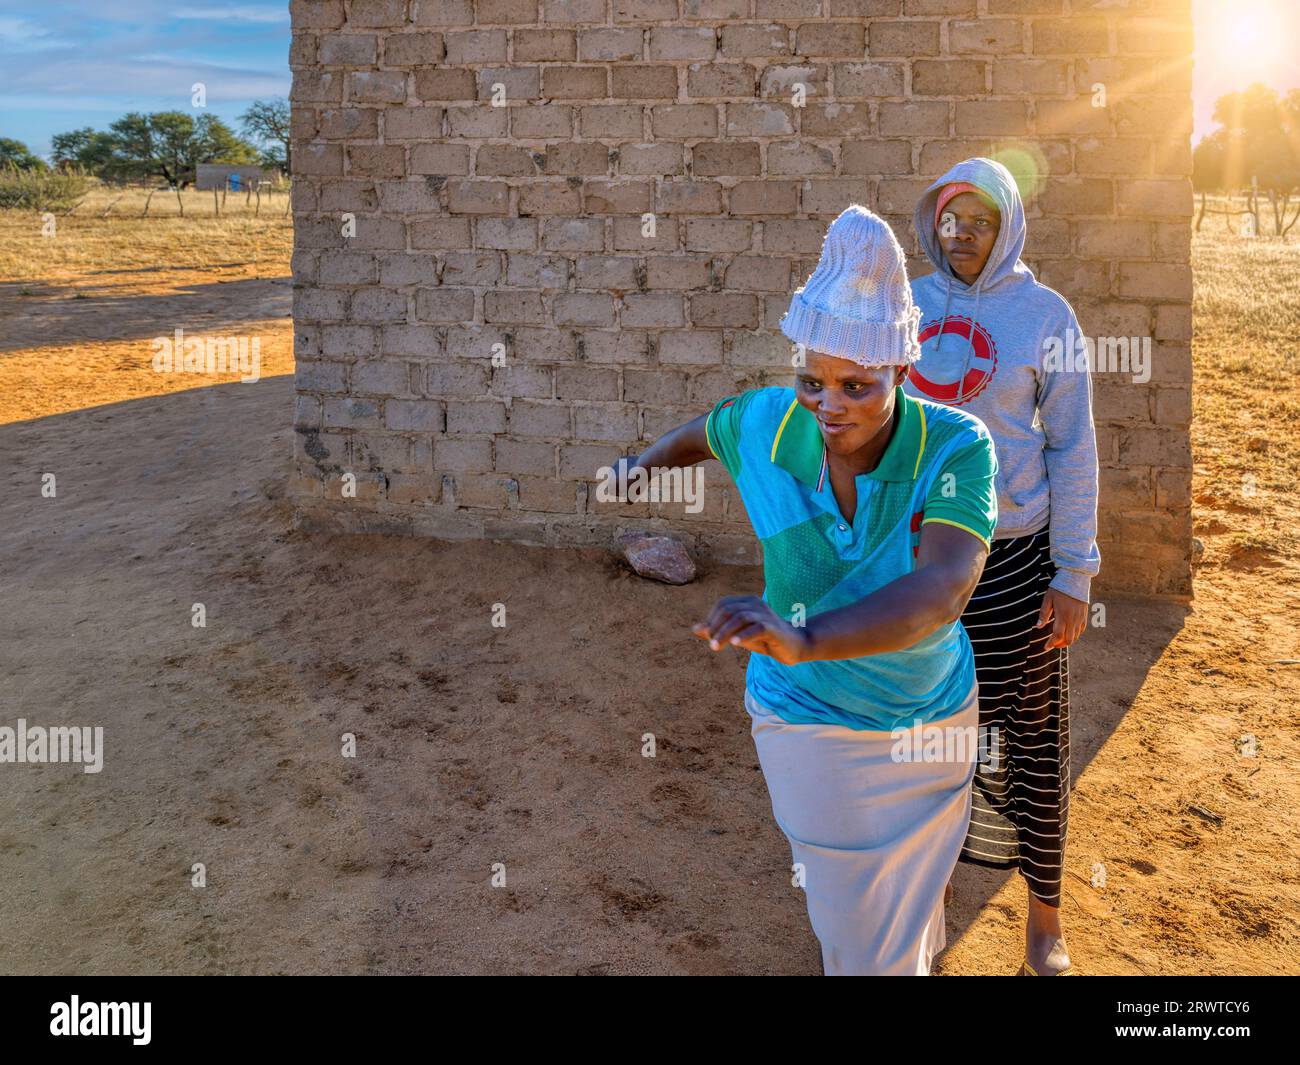 villager donna africana adulta che corre spaventata e veloce come se dimenticasse qualcosa, senso di urgenza, villaggio in Botswana, Foto Stock